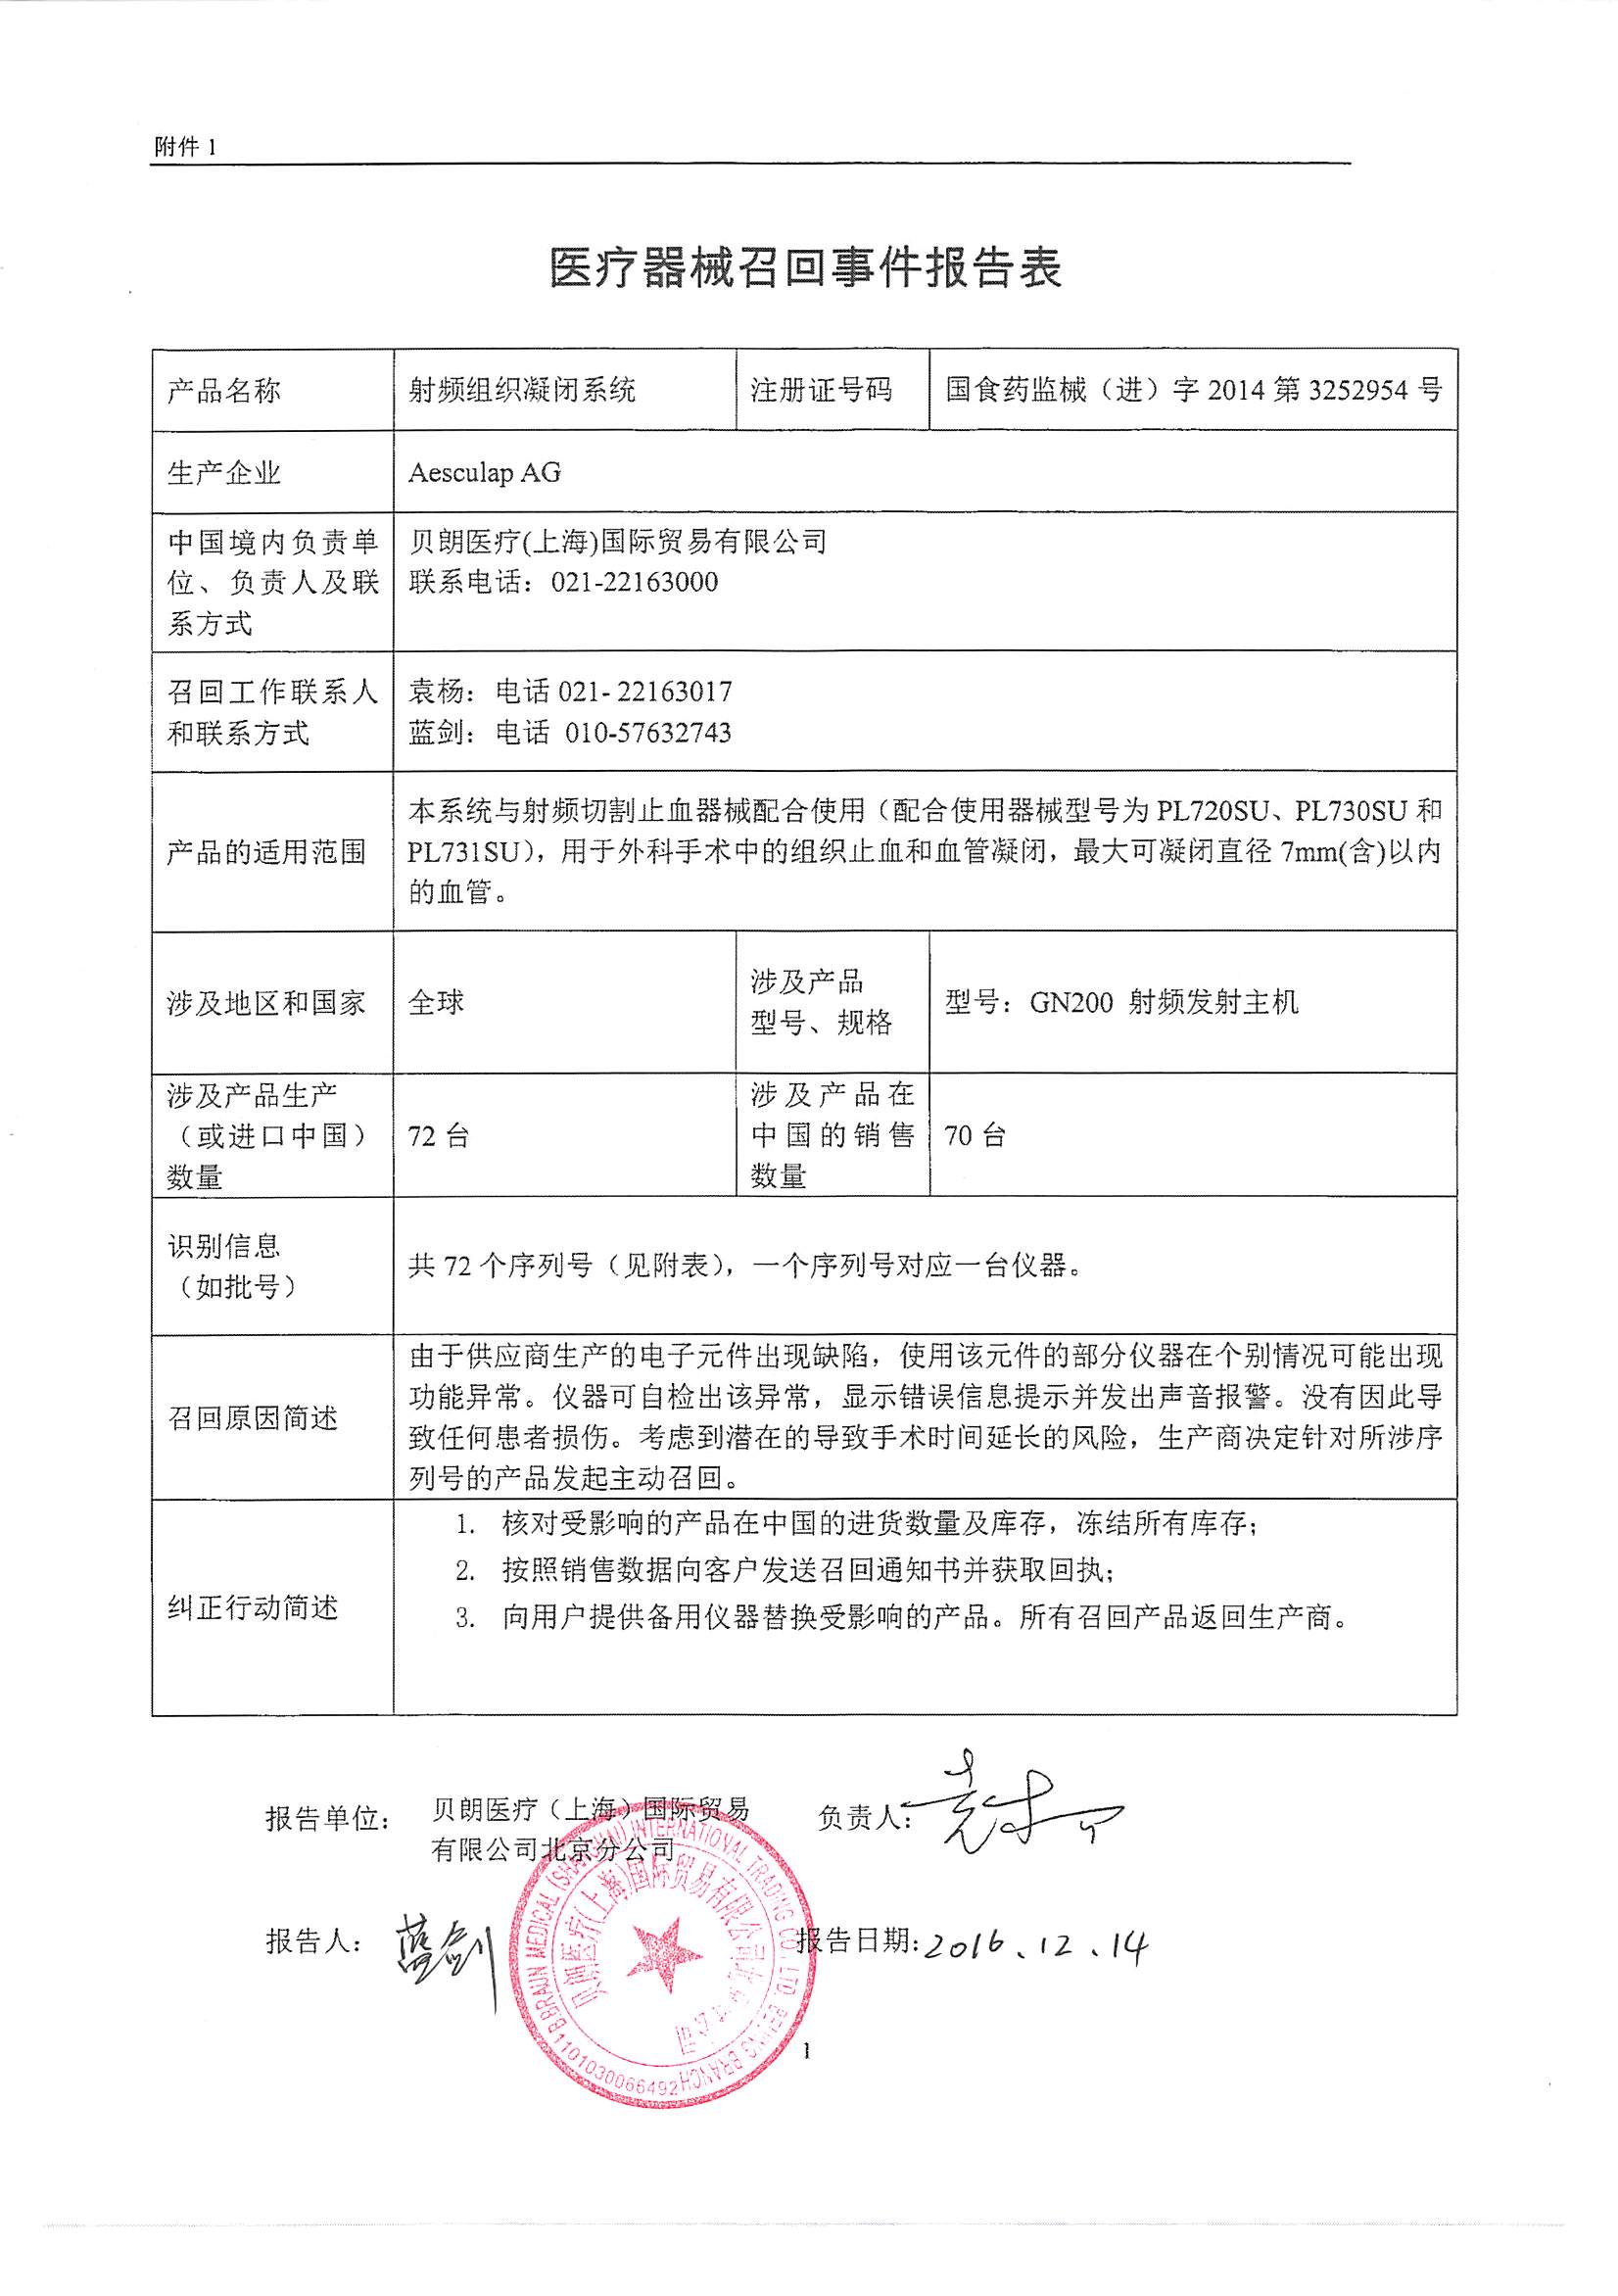 贝朗医疗(上海)国际贸易有限公司对射频组织凝